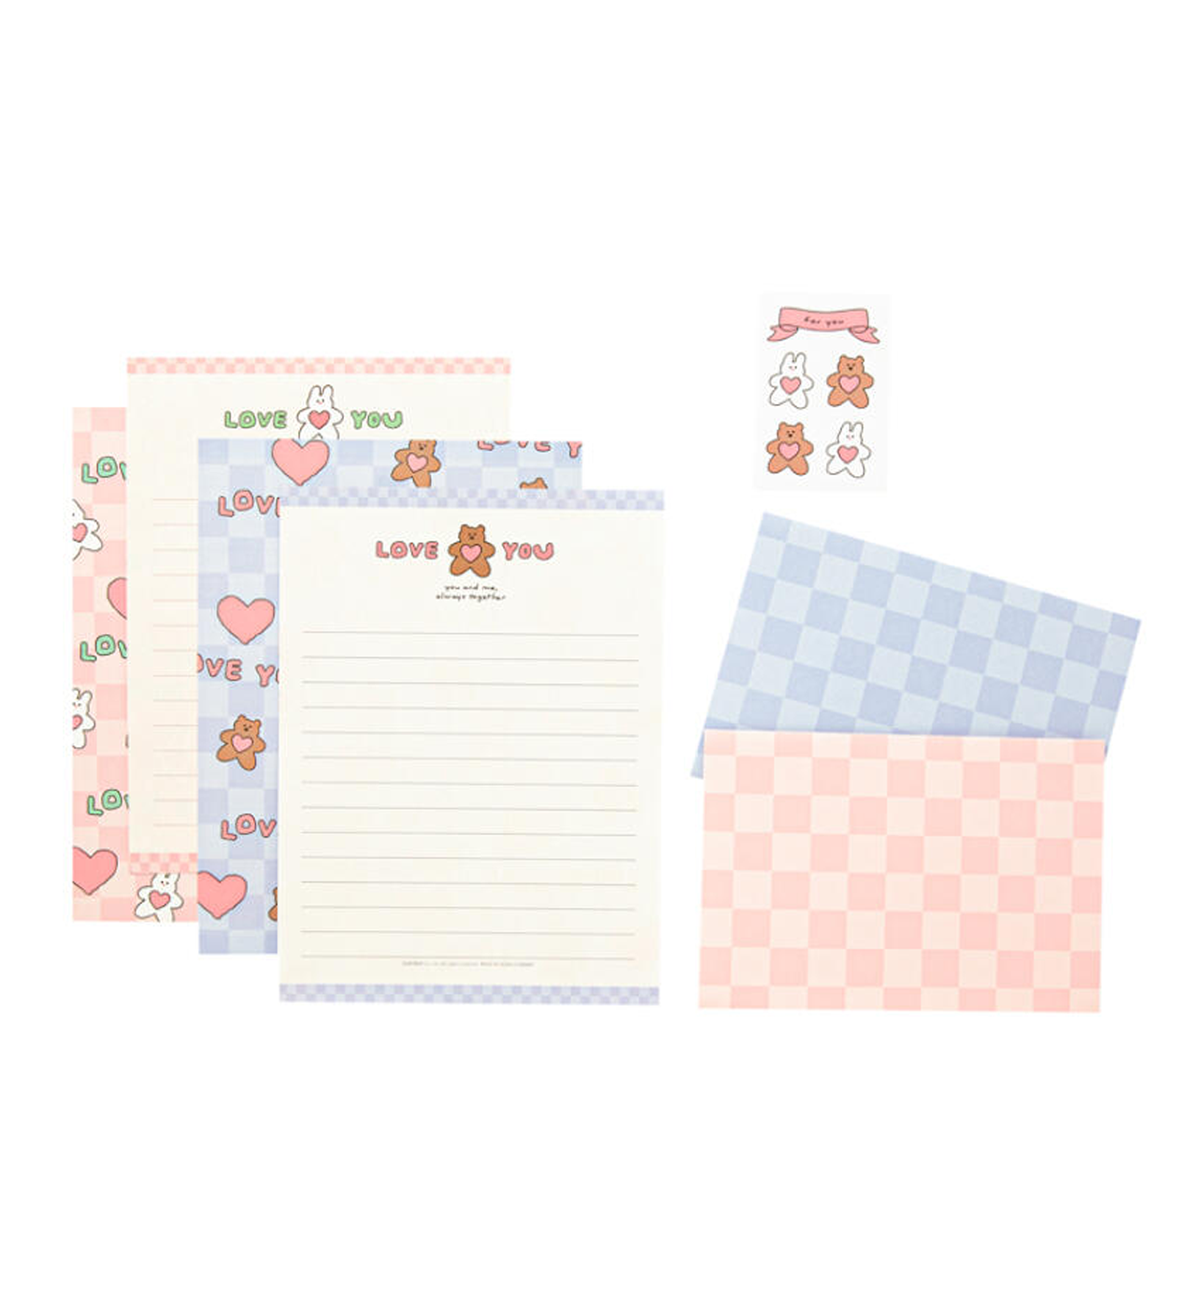 Bear Heart Letters & Envelopes